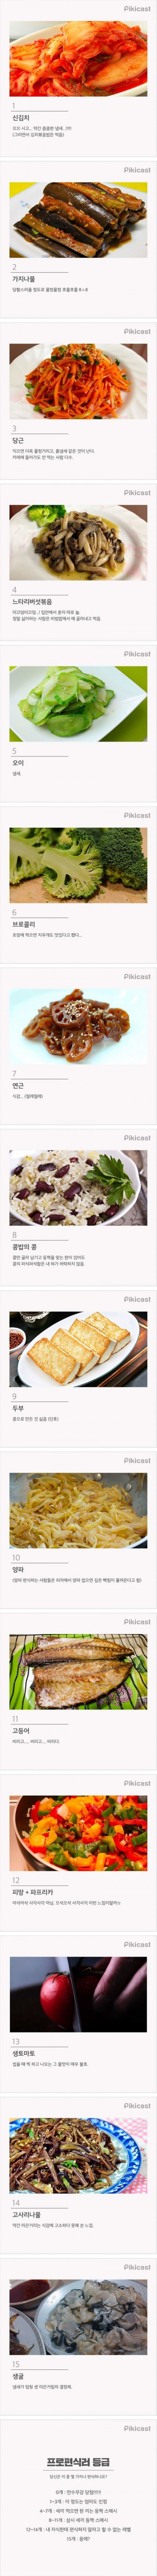 한국인이 많이 편식하는 음식